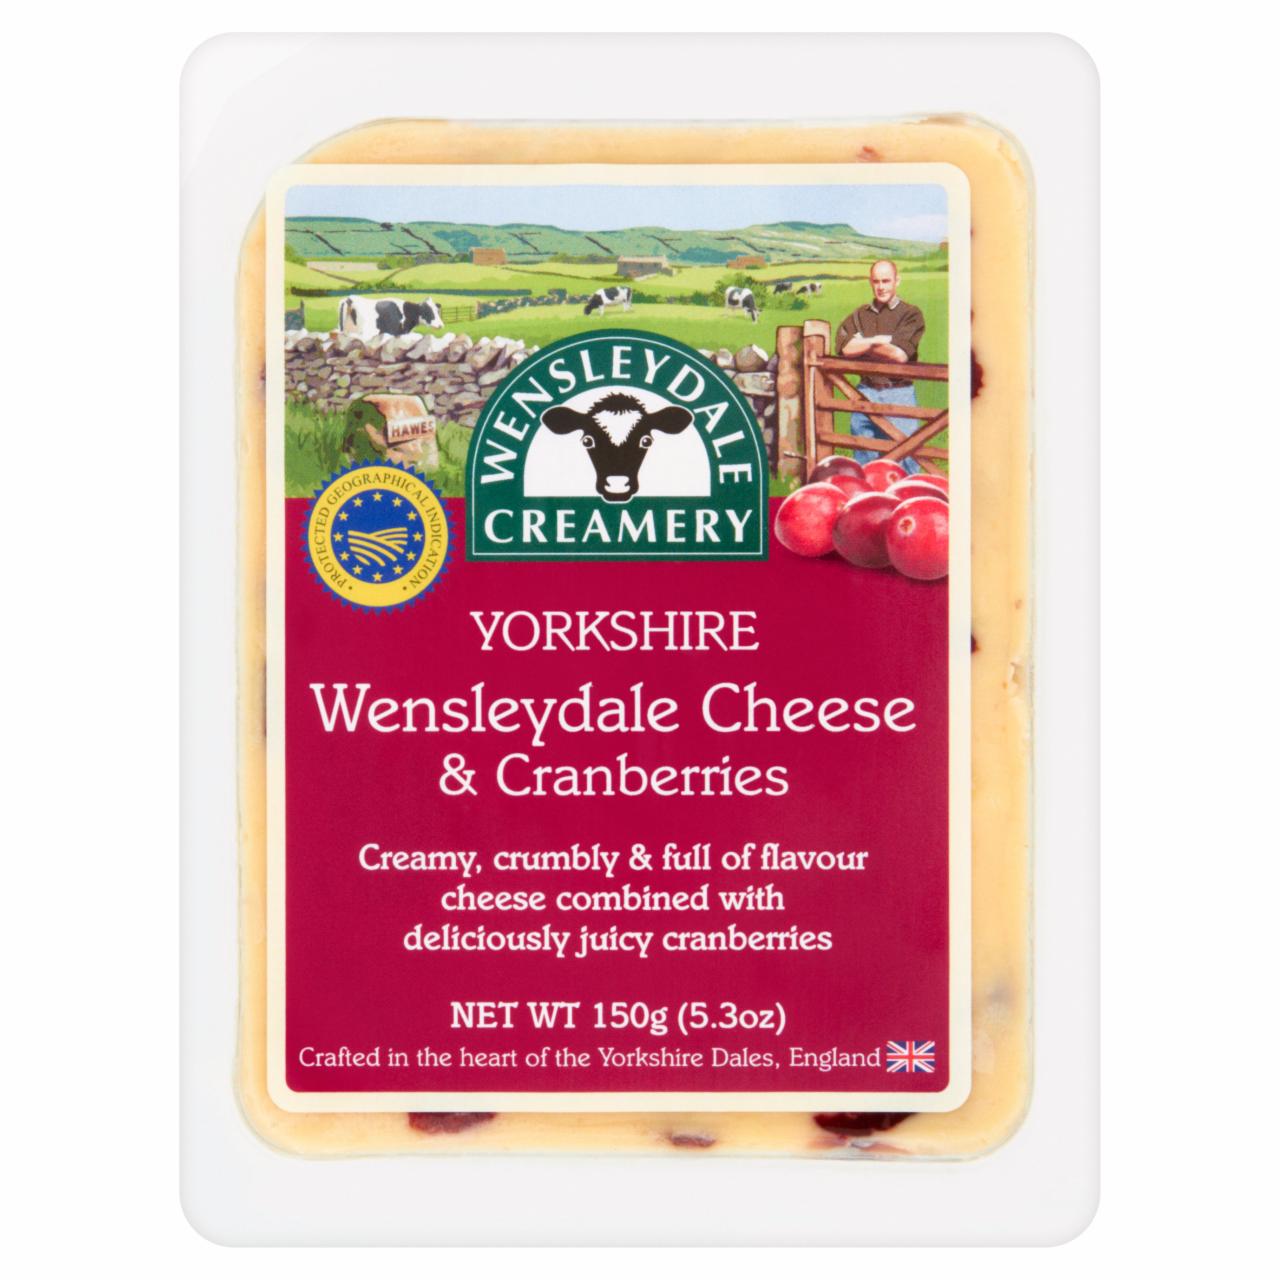 Képek - Wensleydale Creamery Yorkshire Wensleydale & Cranberries félzsíros kemény sajt vörösáfonyával 150 g